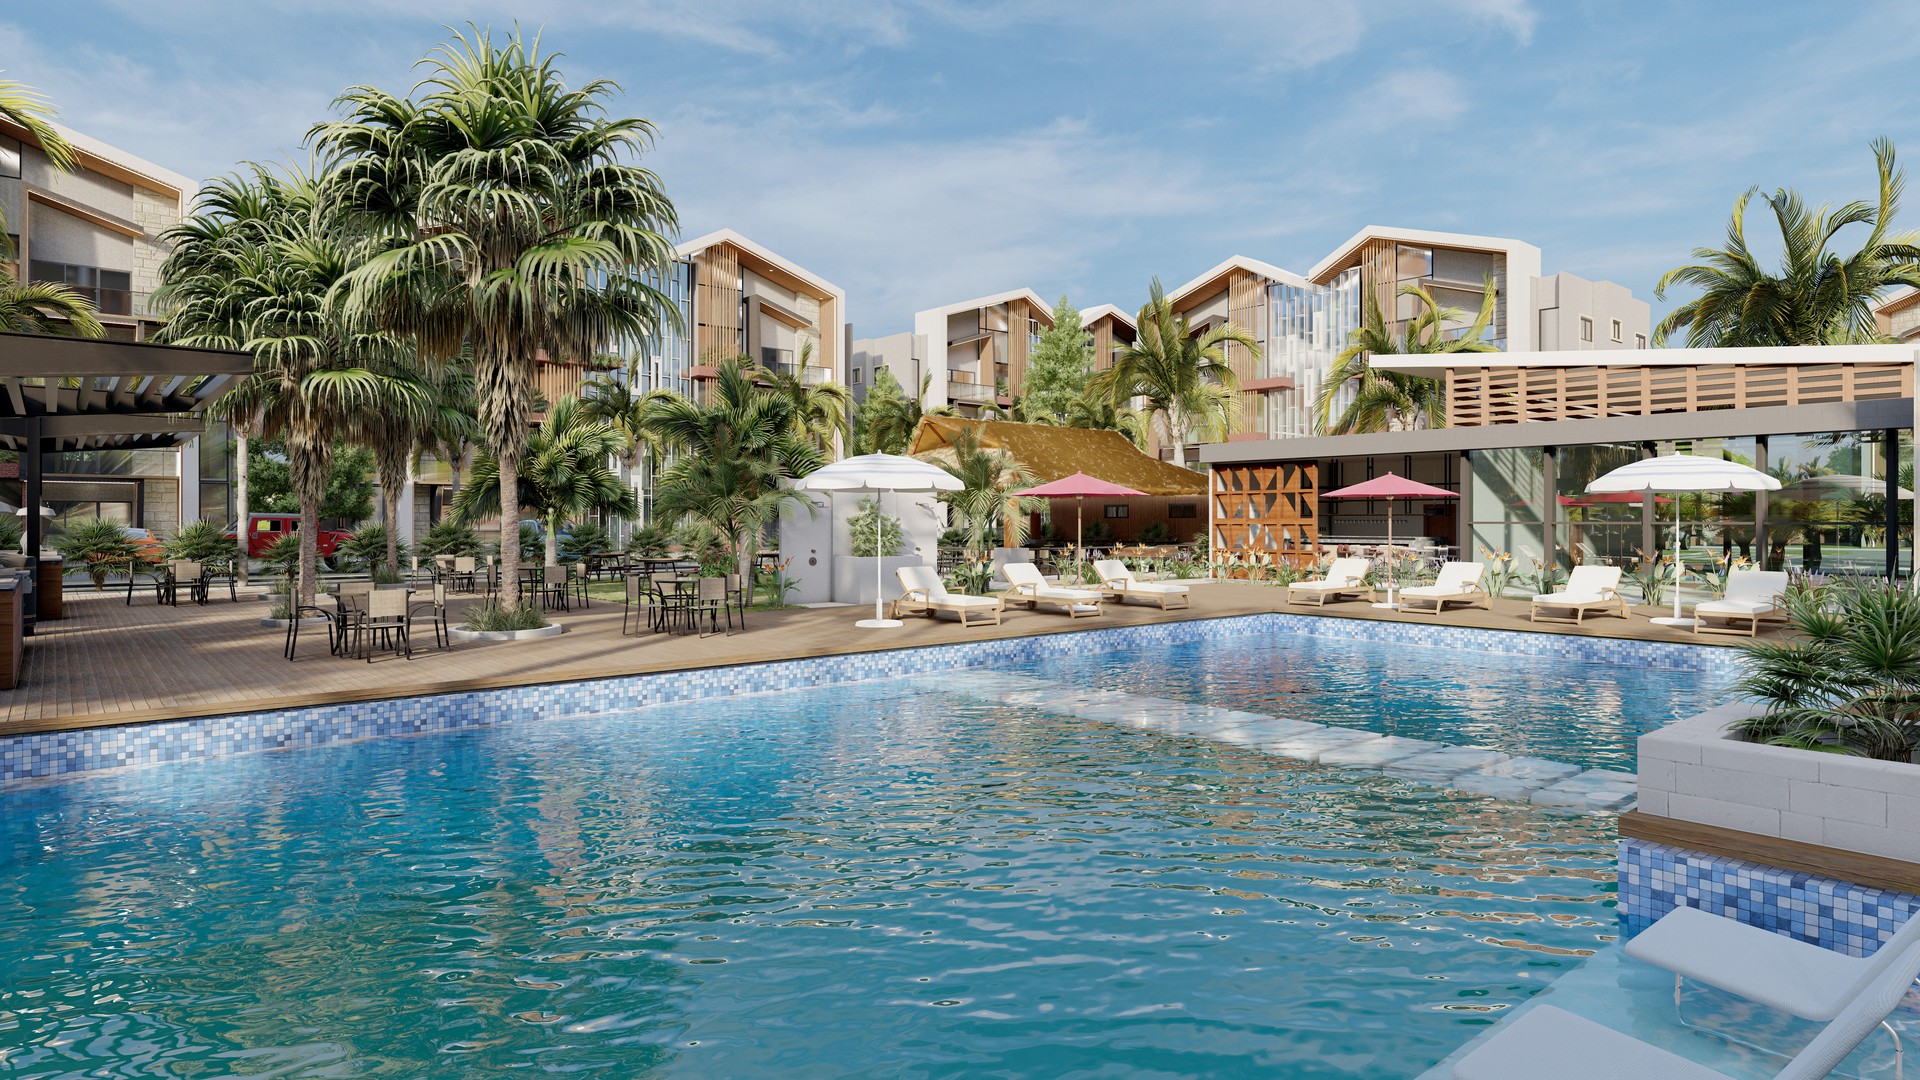 apartamentos - Apartamentos Turísticos en Jarabacoa, con piscina y plaza comercial 